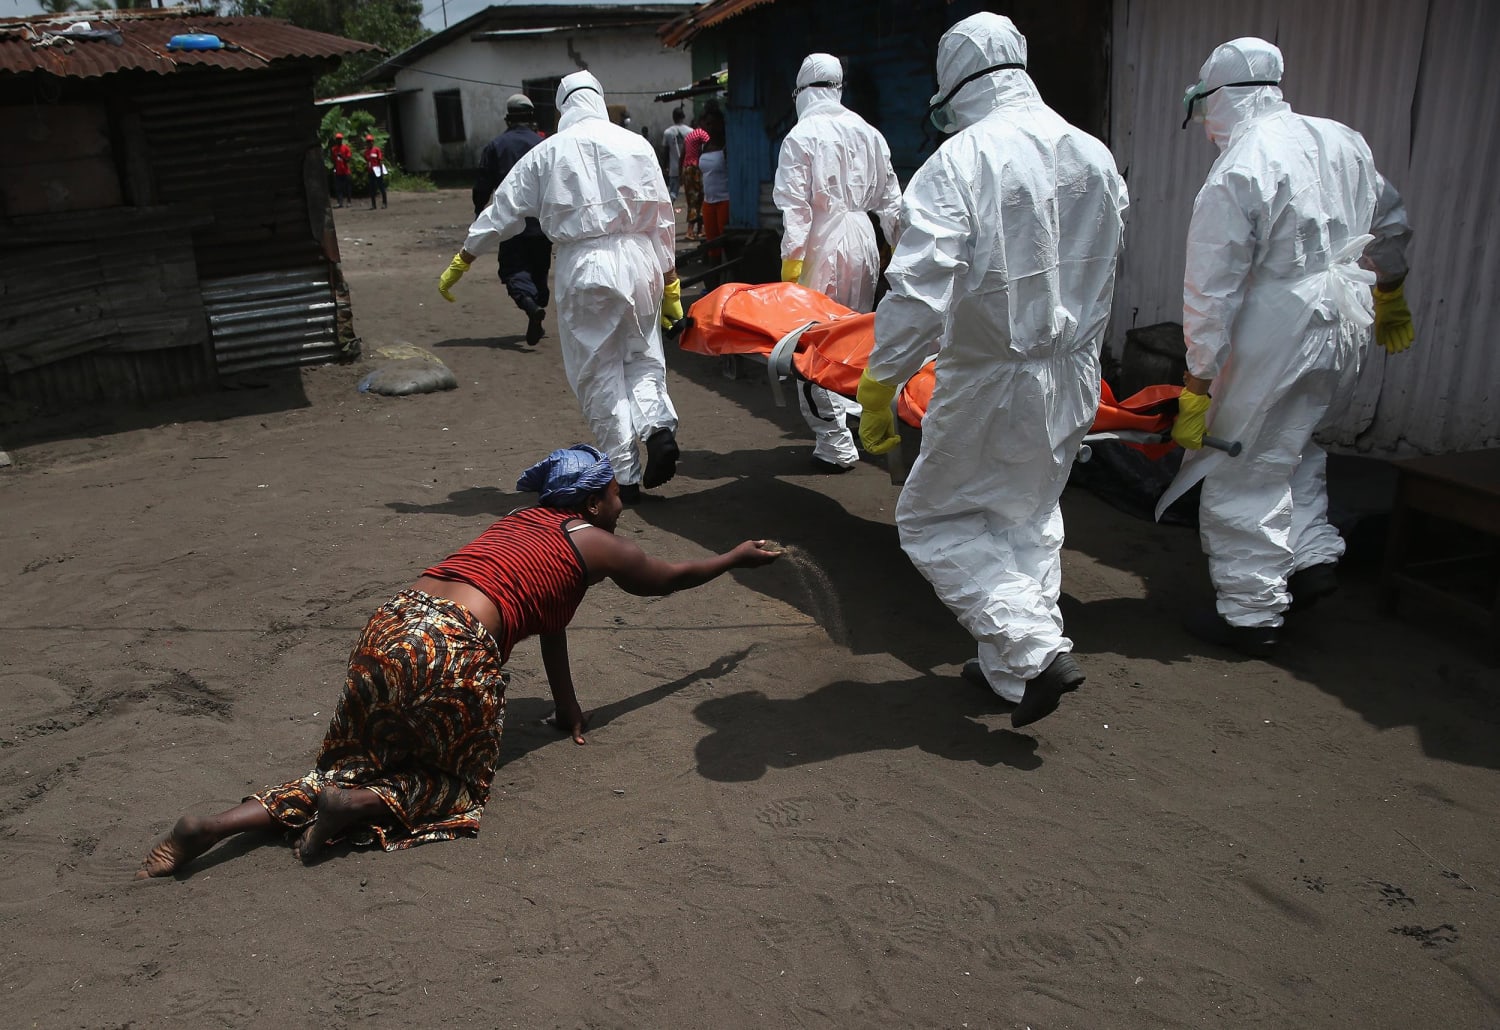 http://media4.s-nbcnews.com/i/newscms/2014_41/711201/141010-ebola-death-toll-1548_3d6ad58be94ec50e24fe731eef6a647c.jpg